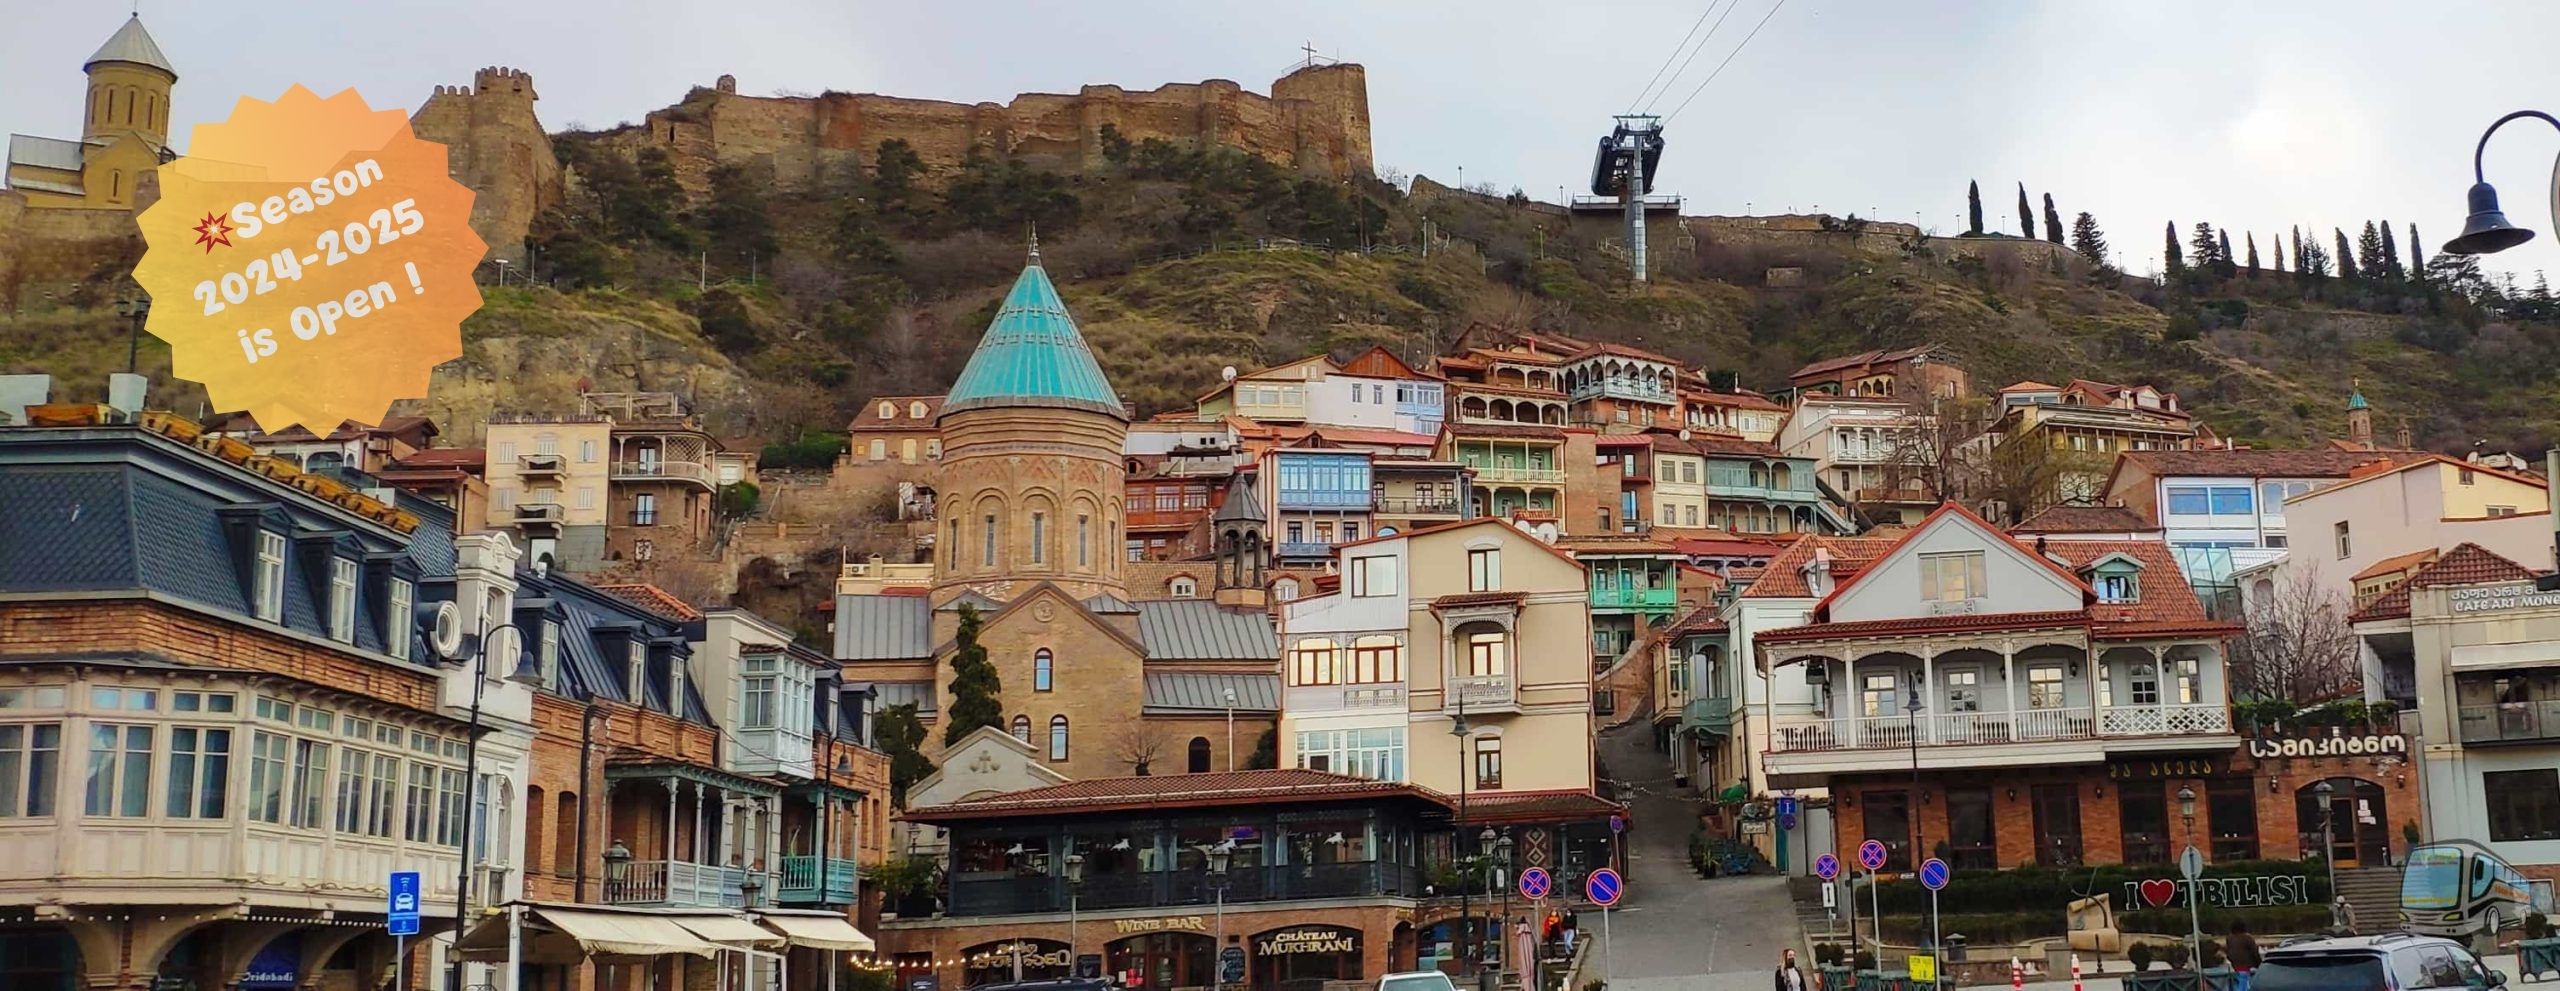 City Sightseing Tbilisi and Tours around Georgia